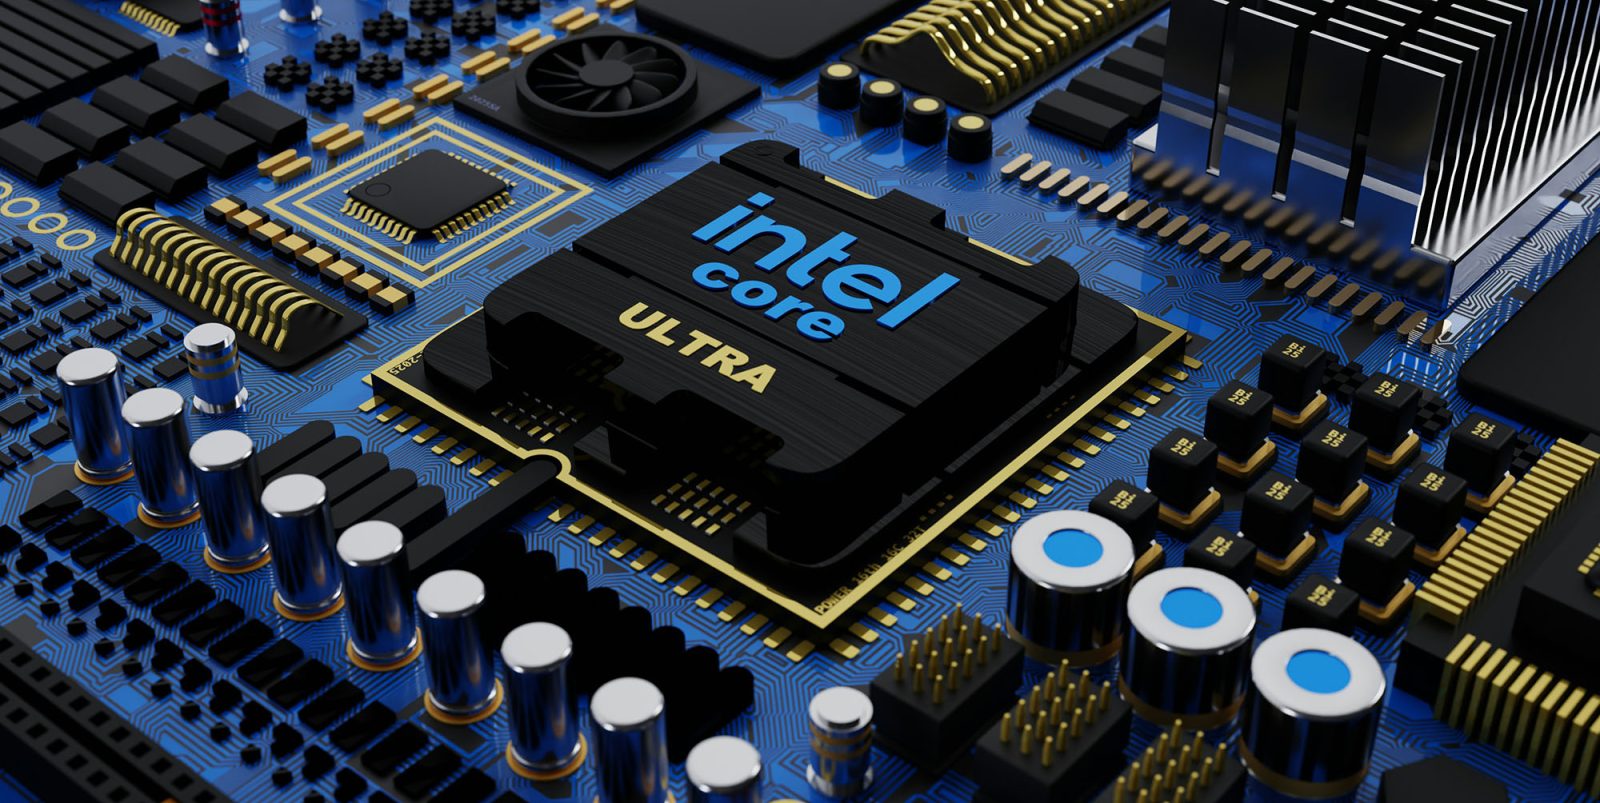 15,000 Intel job cuts | Stylized image of Intel chip